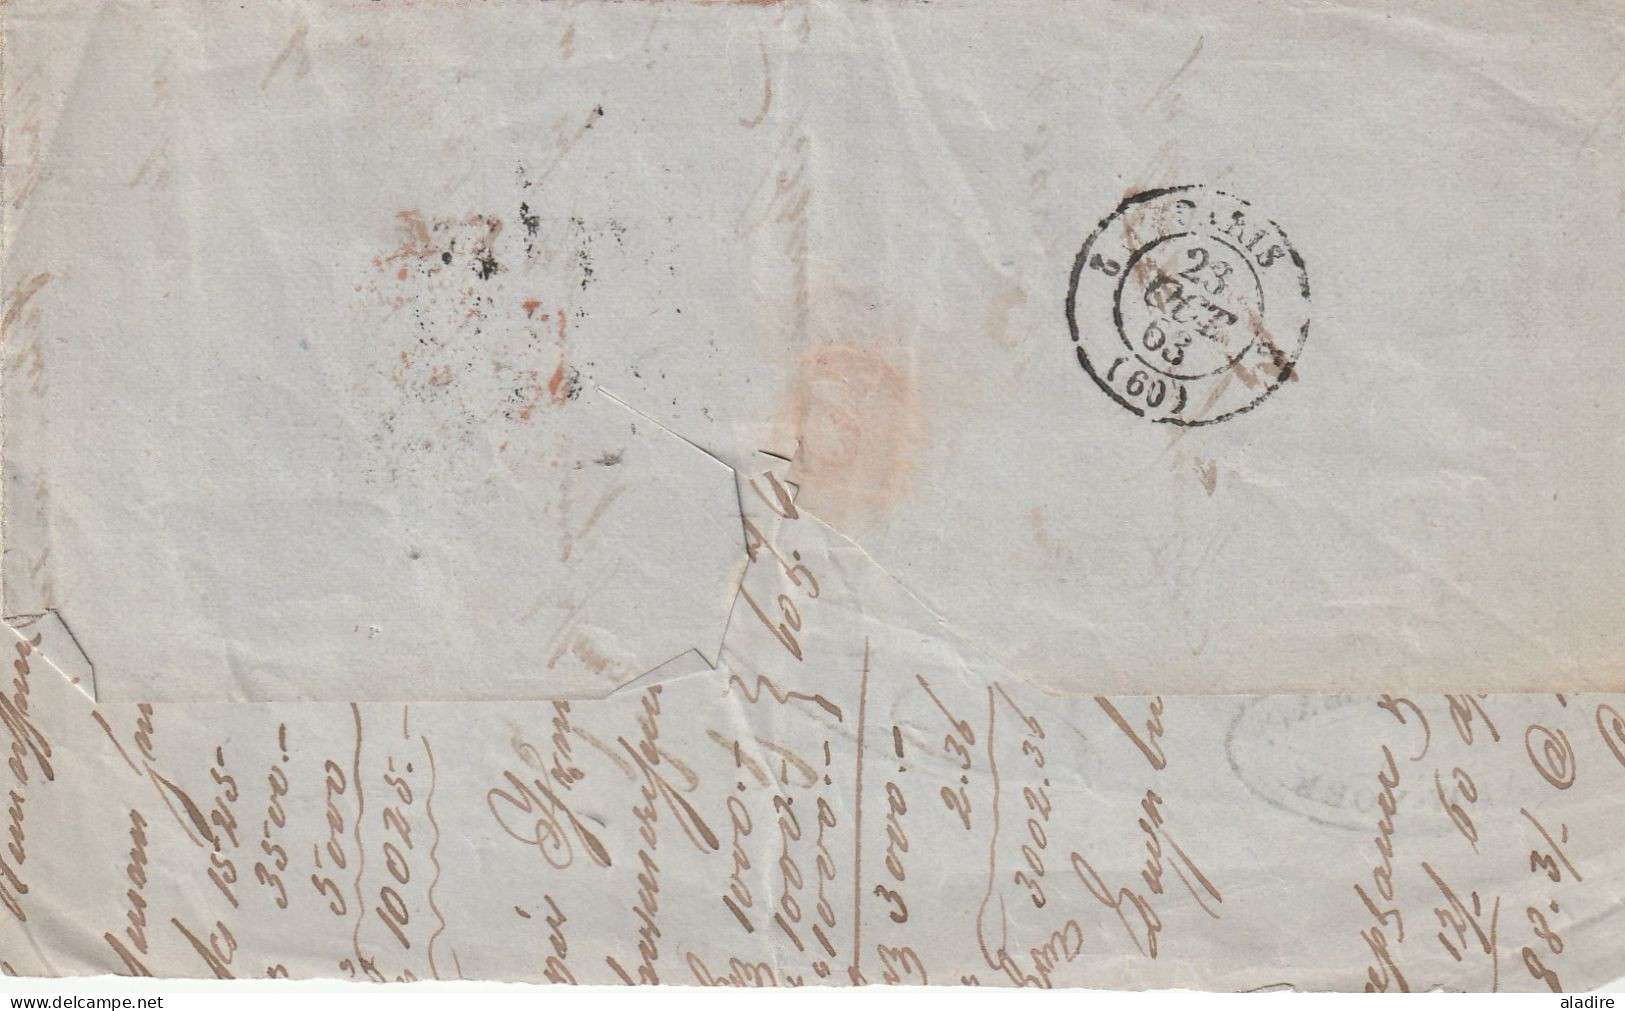 USA MARITIME 1851/1863 - lot de 6 lettres de New York, New Orleans & Saint Louis vers Paris, Havre, Rotterdam, Markinch